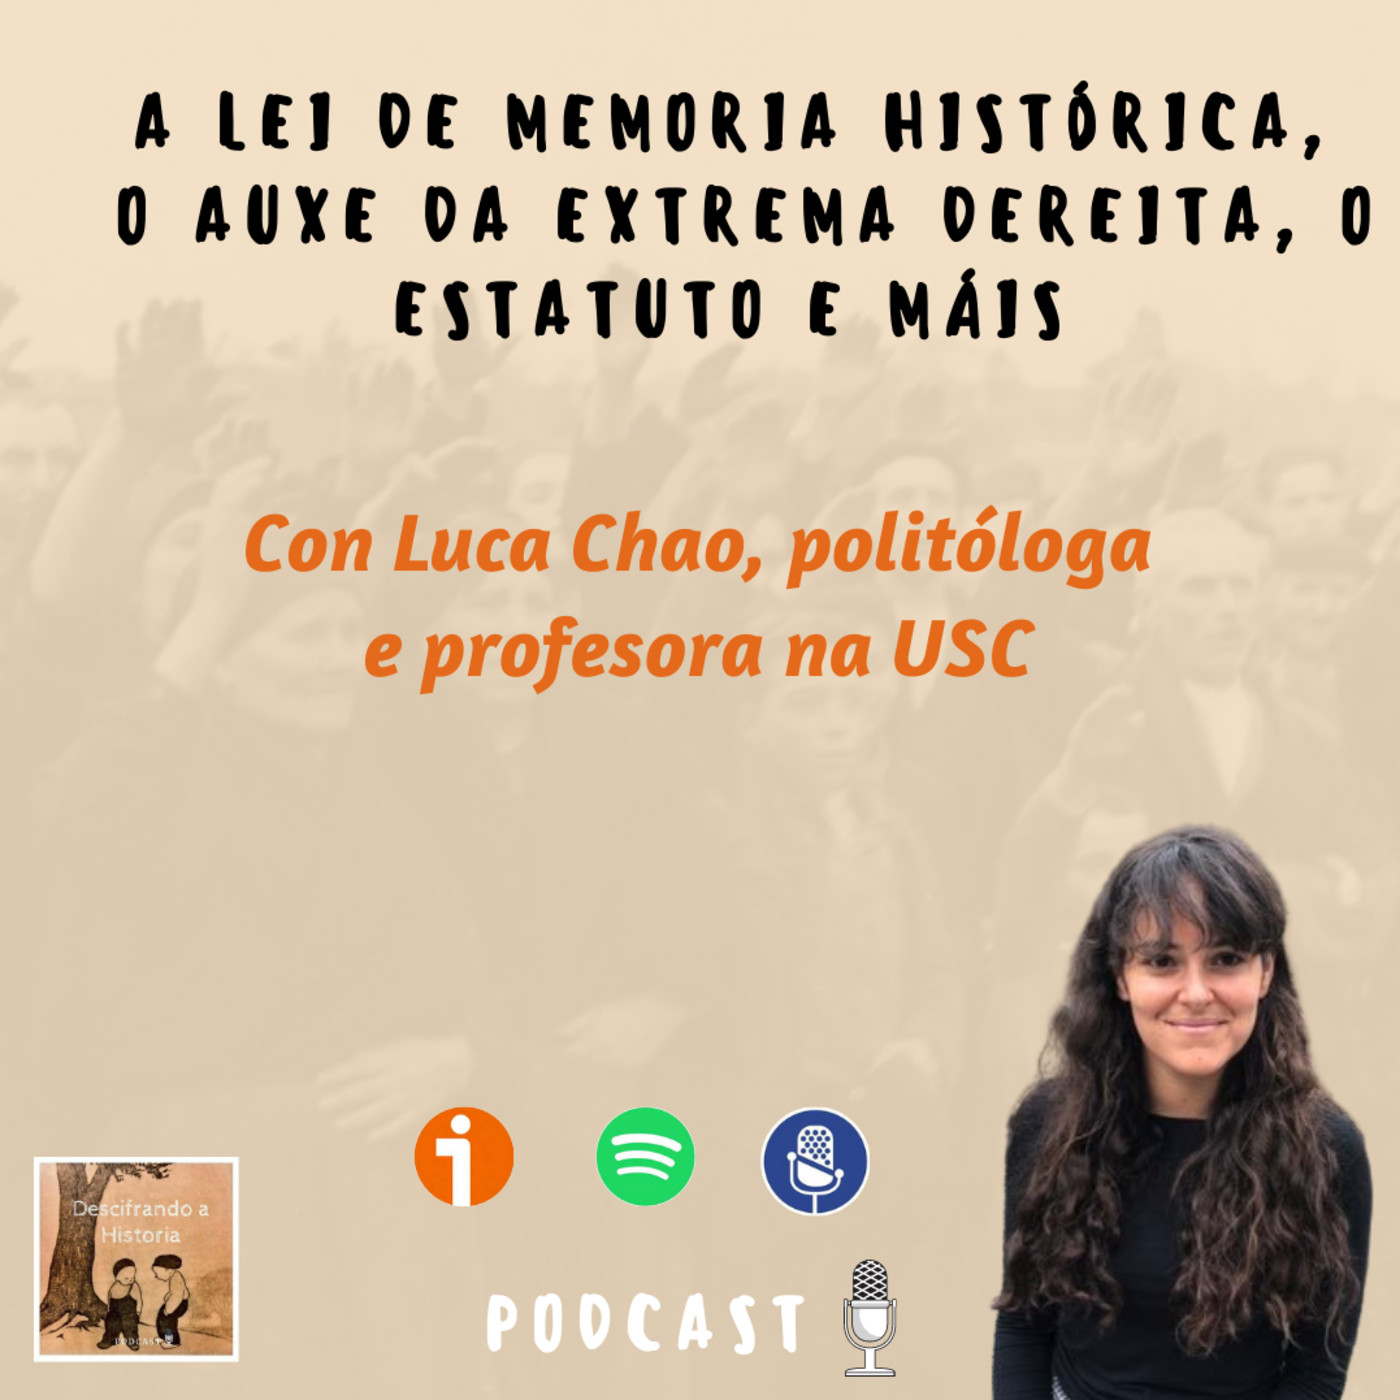 Conversa con Luca Chao, a Lei de Memoria Histórica, o auxe da extrema dereita, o Estatuto e máis